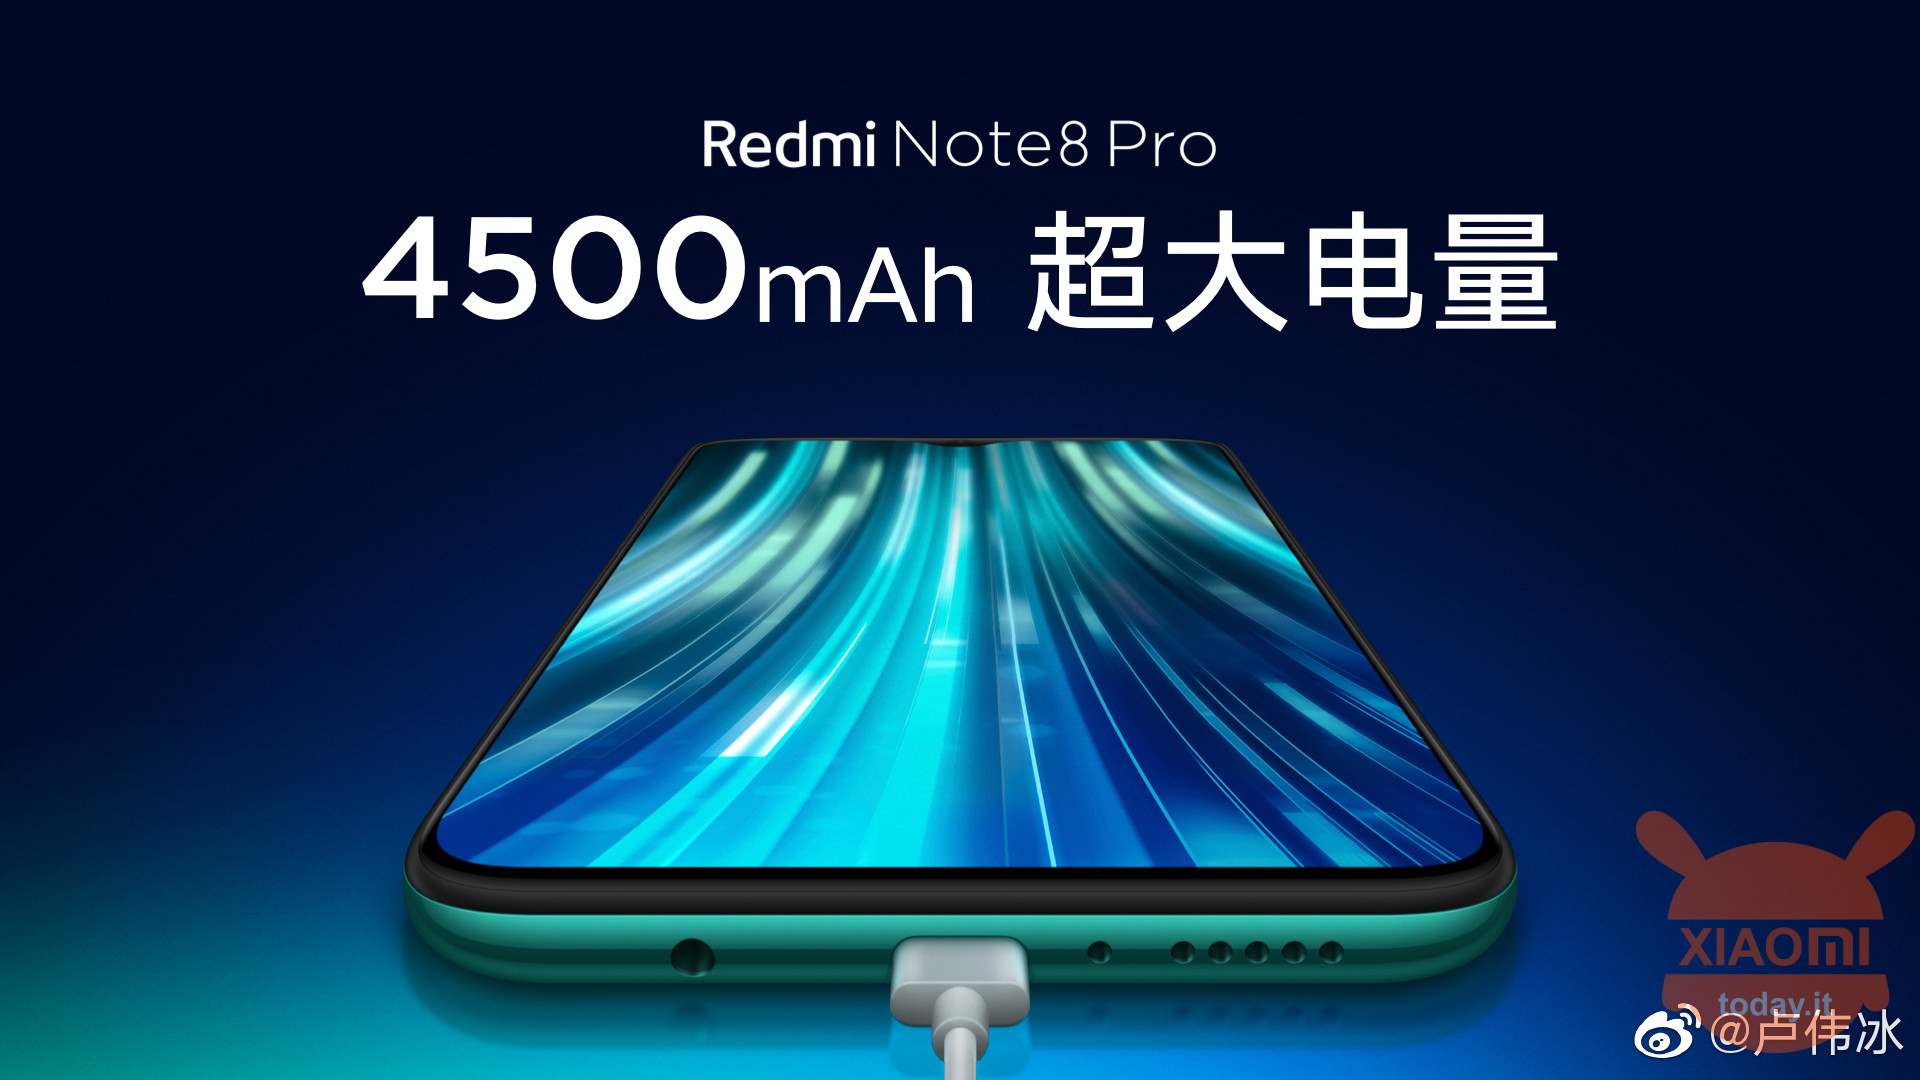 Redmi Note 1 Pro